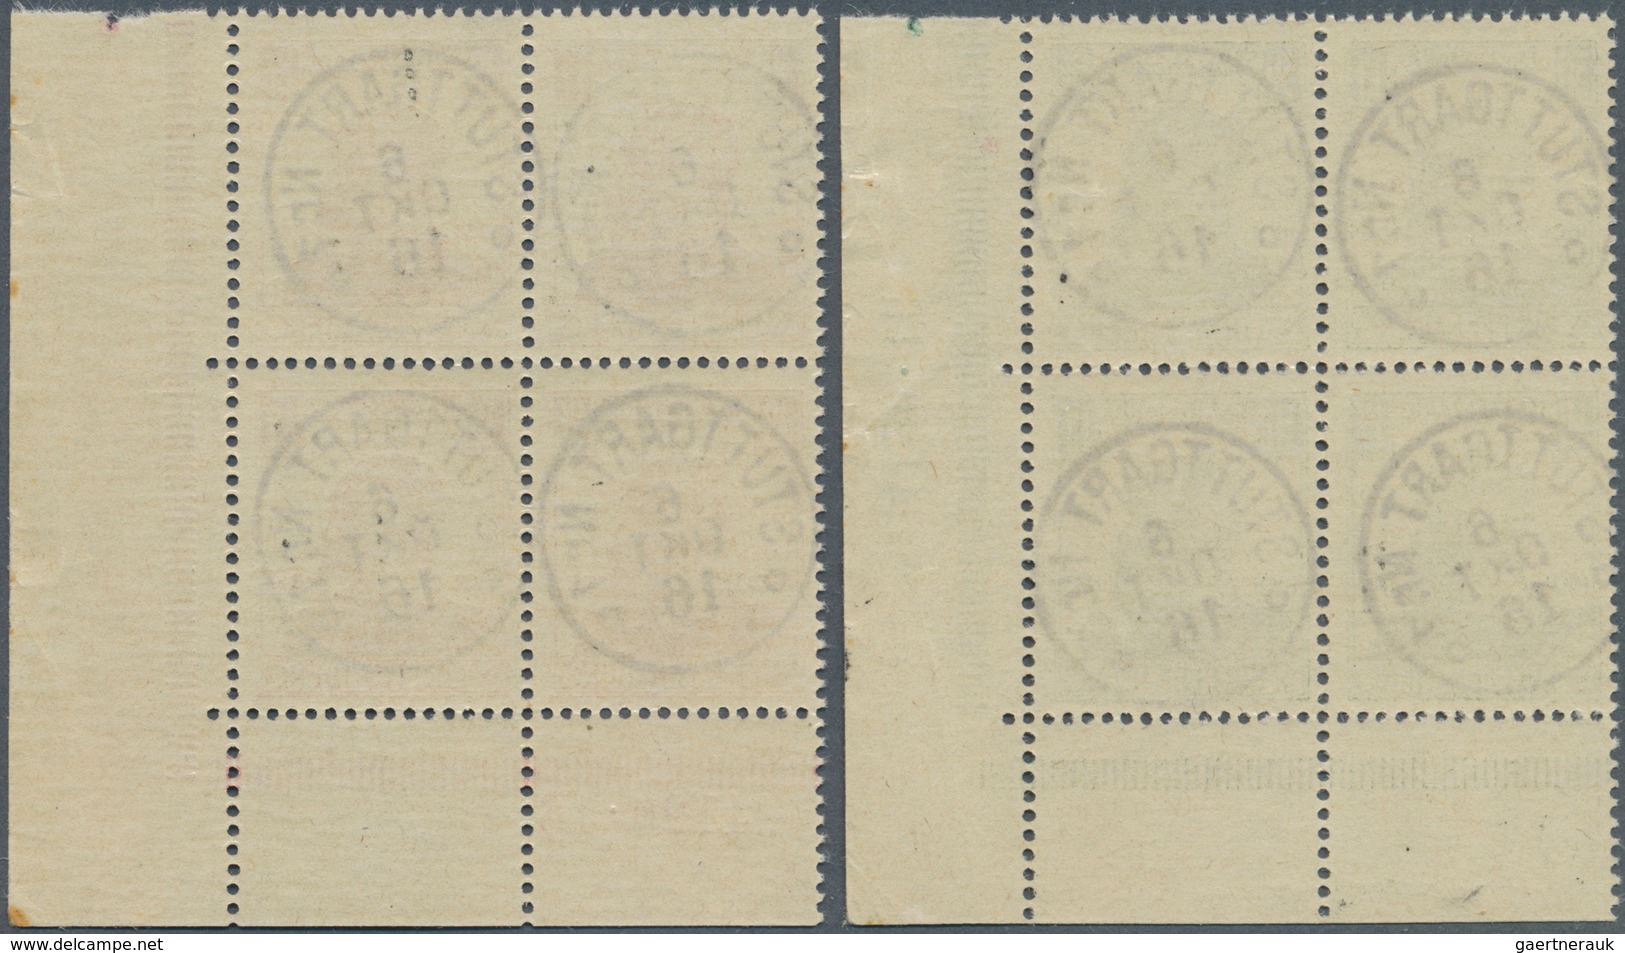 Württemberg - Marken und Briefe: 1916, 2½ Pf bis 1 M "25 Jahre Regentschaft Wilhem II" zehn Werte ko